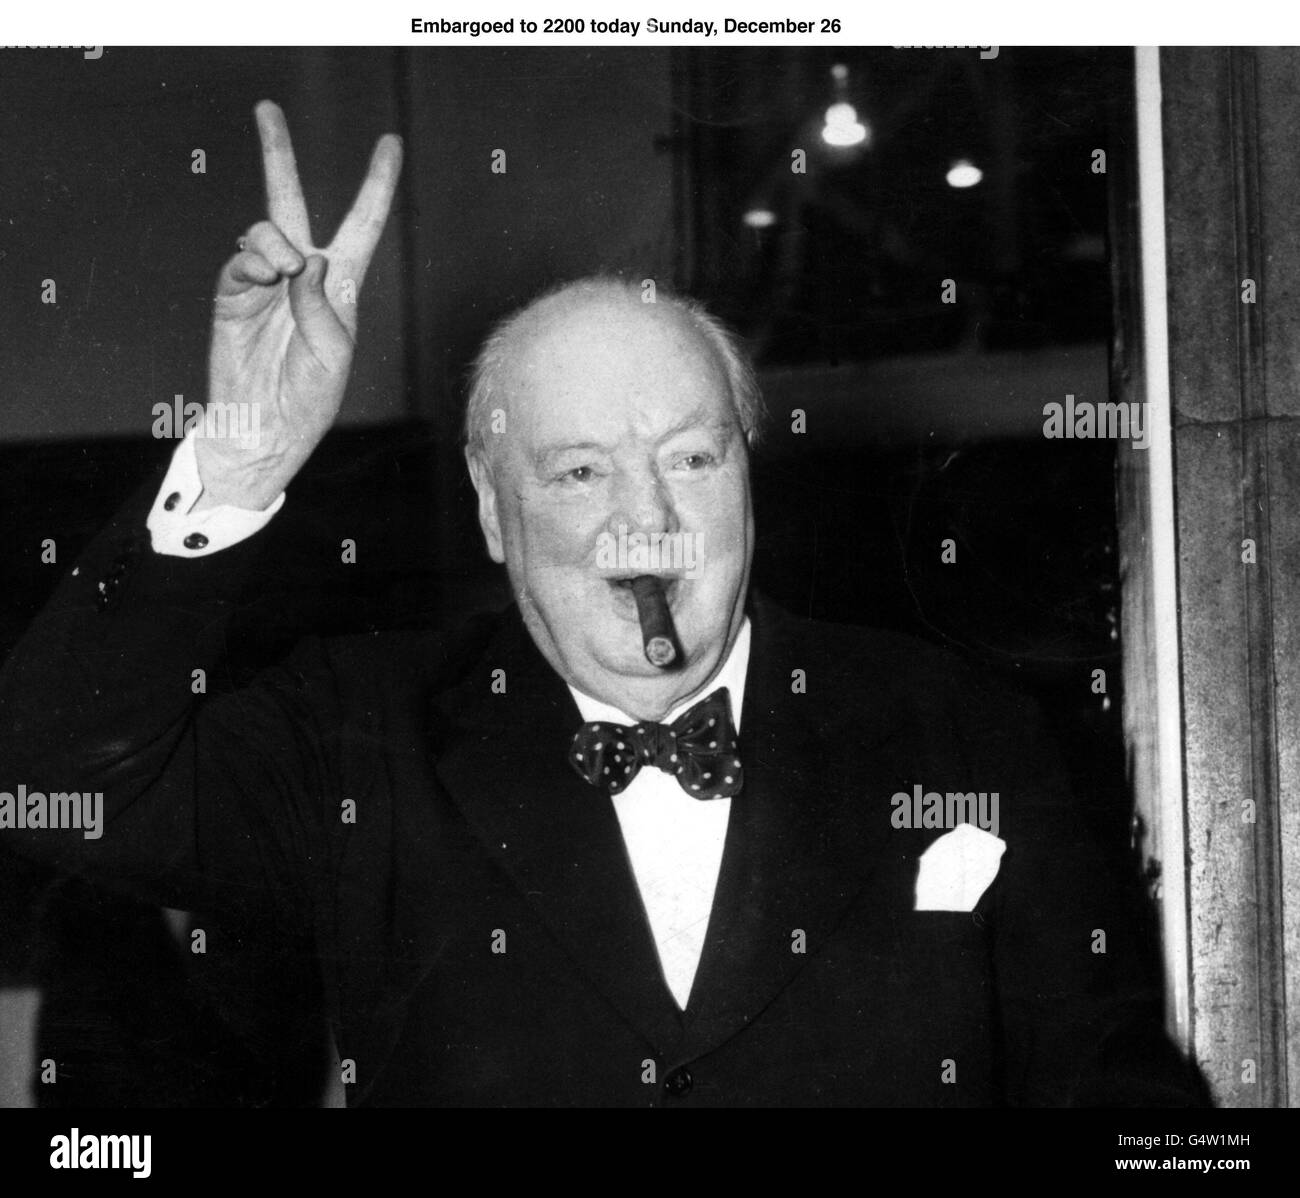 SIR WINSTON CHURCHILL VOM 17/9/54 . Der Kriegsführer Winston Churchill war der größte Premierminister des 20. Jahrhunderts, laut einer neuen Umfrage von BBC Radio 4, The Westminster Hour, die die 19 Premierminister von Lord Salisbury an der Jahrhundertwende bis zu John Major in den 1990er Jahren rangierte, Dezember 1999. Churchill, dessen Führung und Reden Großbritannien durch den Zweiten Weltkrieg inspirierten, schlug den letzten liberalen Premierminister David Lloyd George auf den zweiten Platz und Churchills Nachfolger Clement Attlee auf den dritten Platz. Siehe PA Story POLITIK Churchill. PA-Foto. Stockfoto